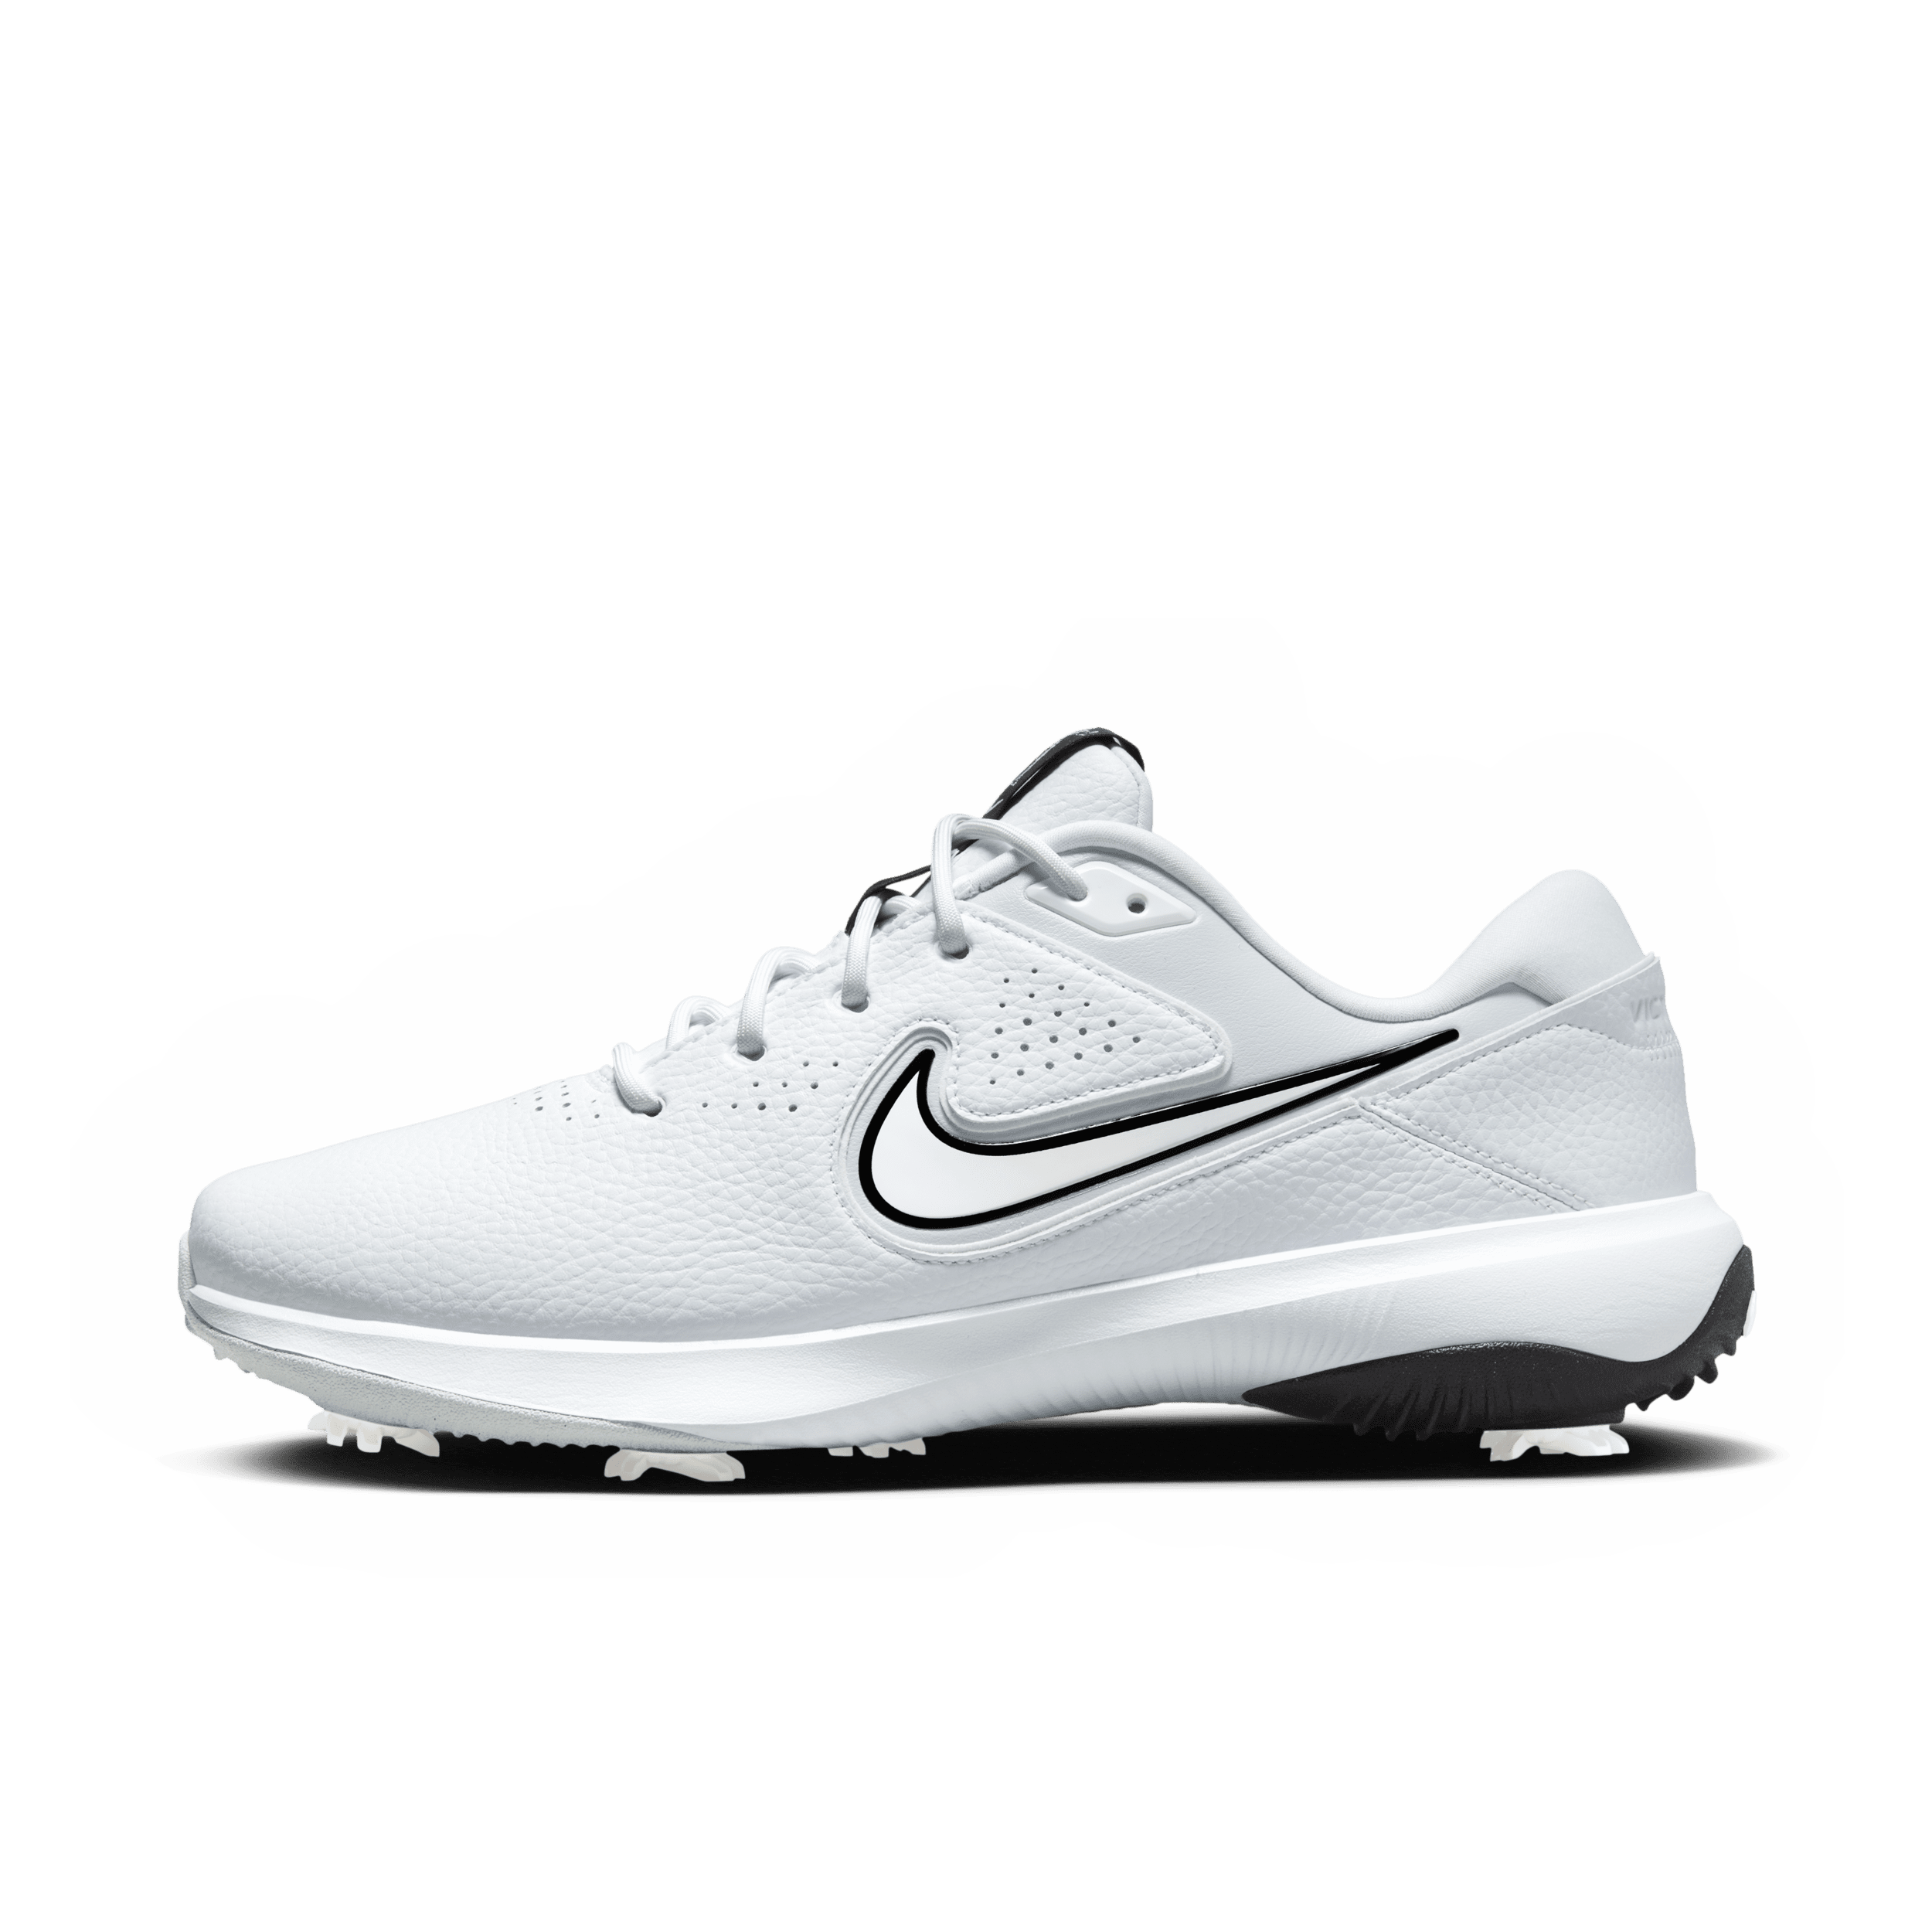 Nike Victory Pro 3 Golfschoenen voor heren - Wit